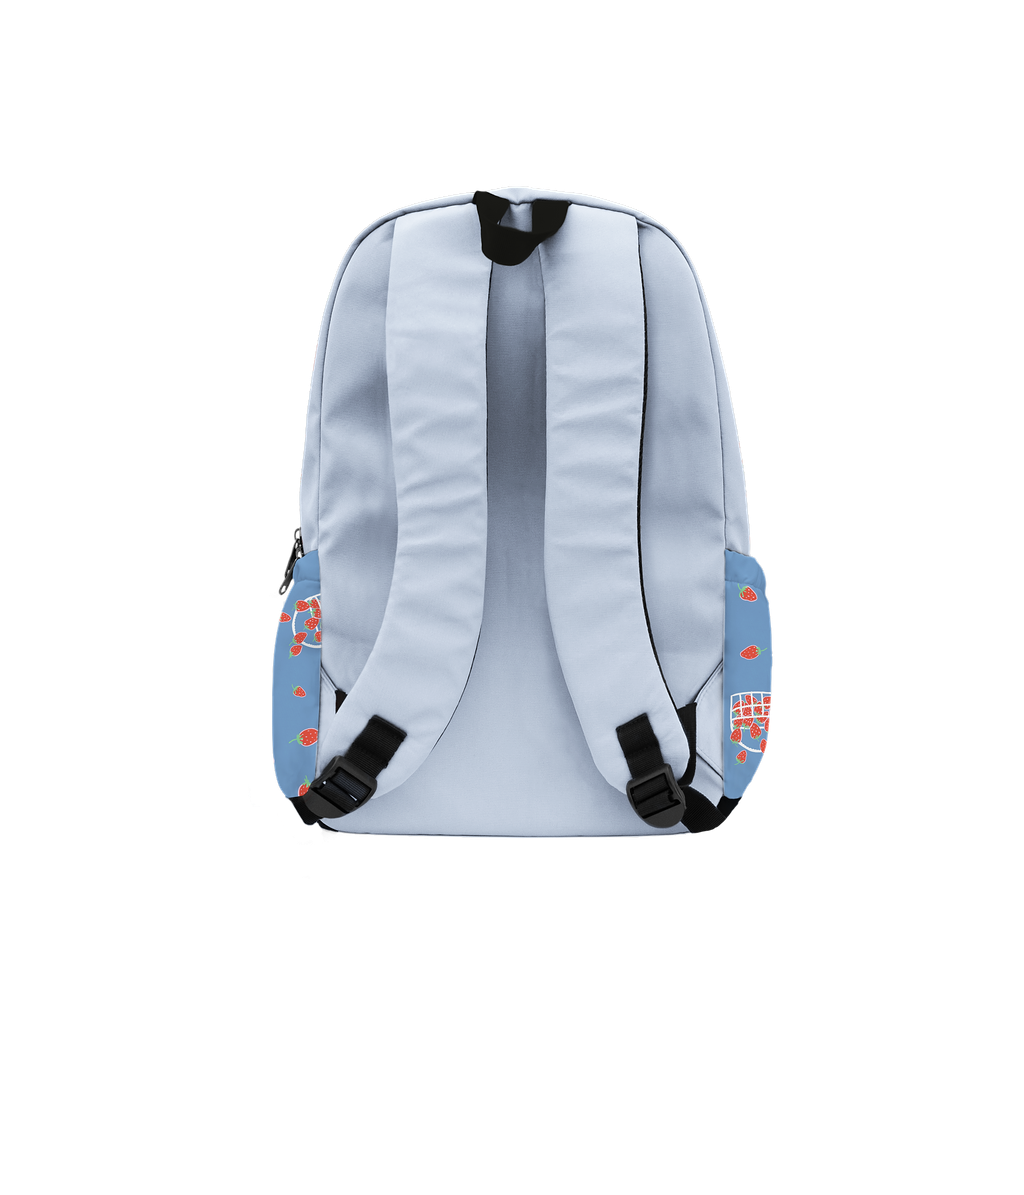 Headster School Bag